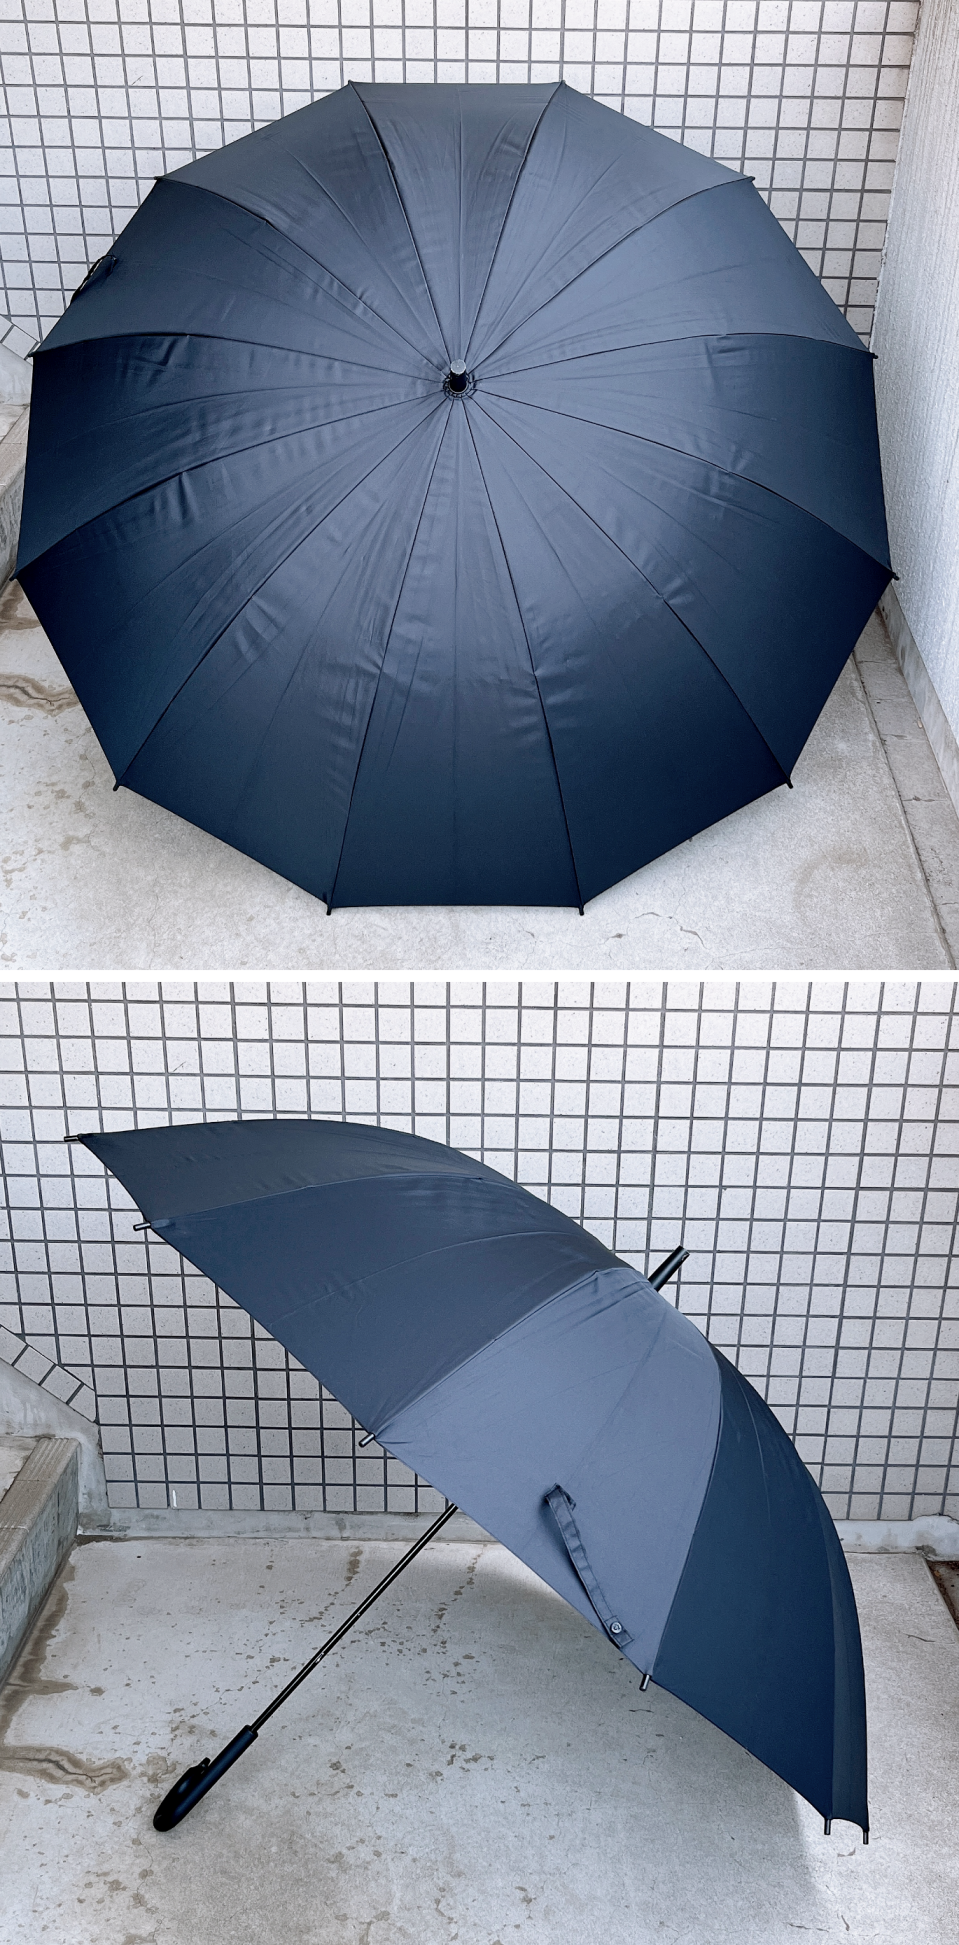 無印良品のおすすめグッズ「しるしのつけられる 大きい傘」